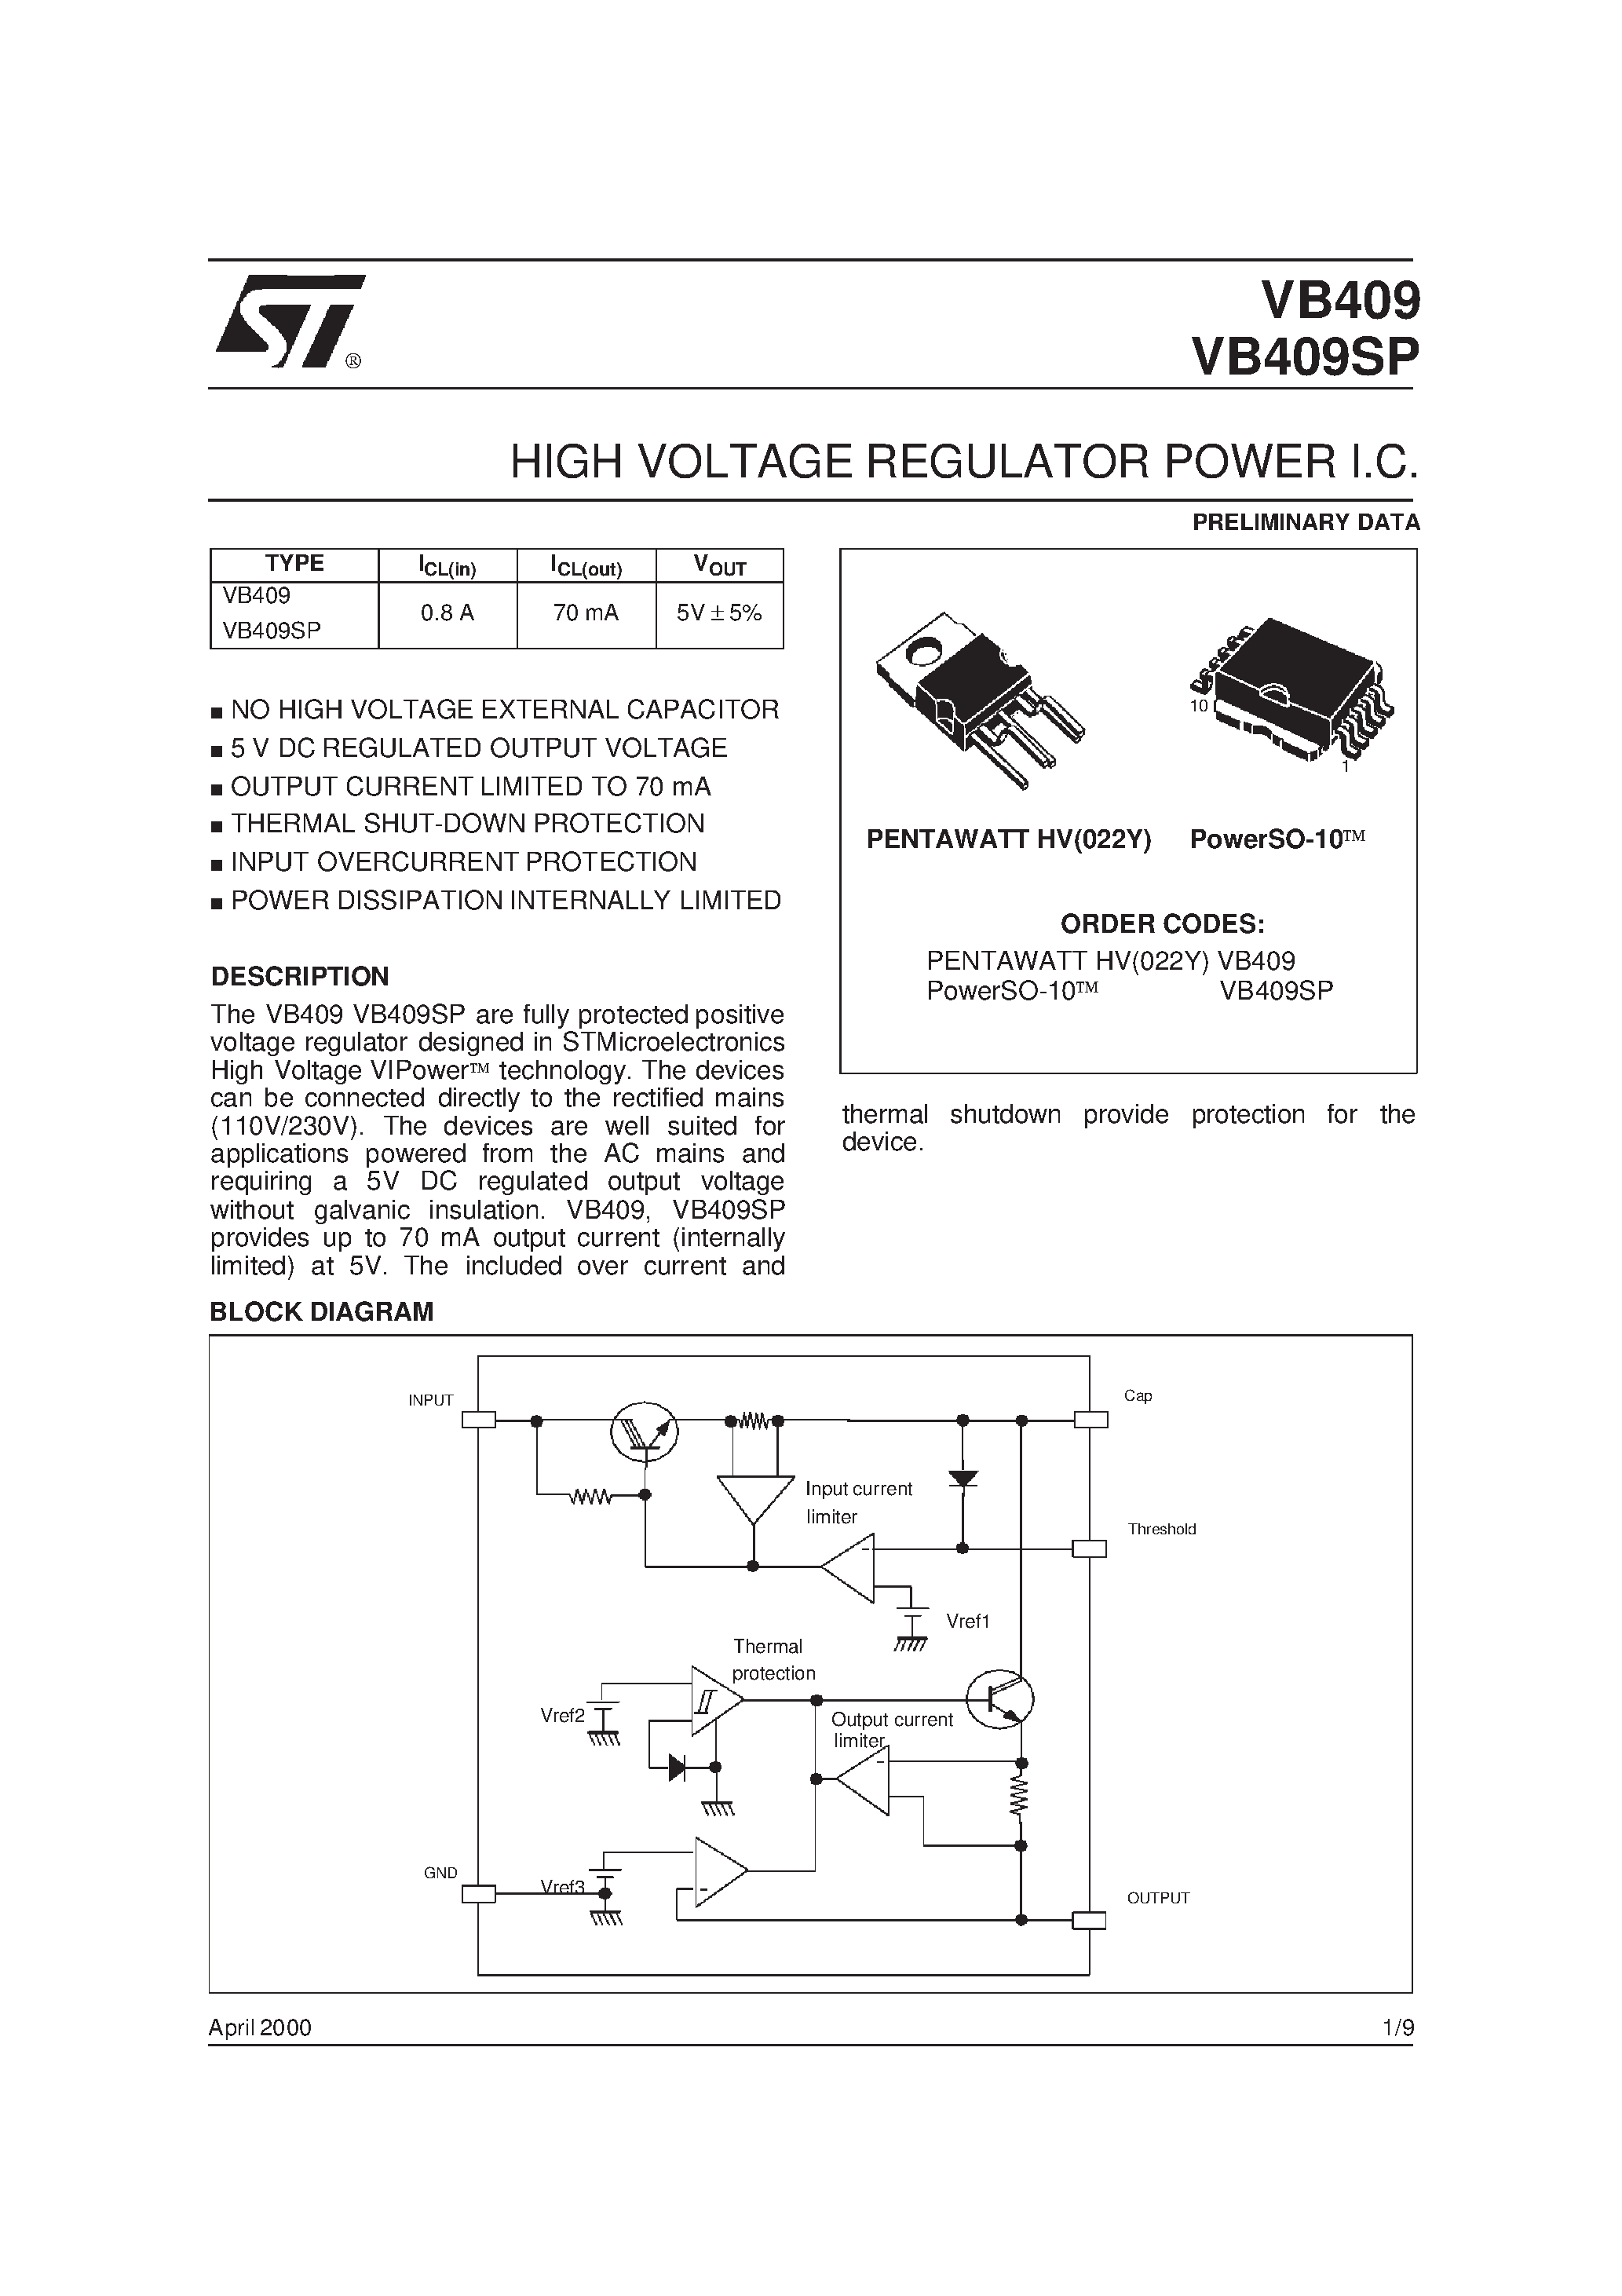 Datasheet VB409SP - HIGH VOLTAGE REGULATOR POWER I.C. page 1